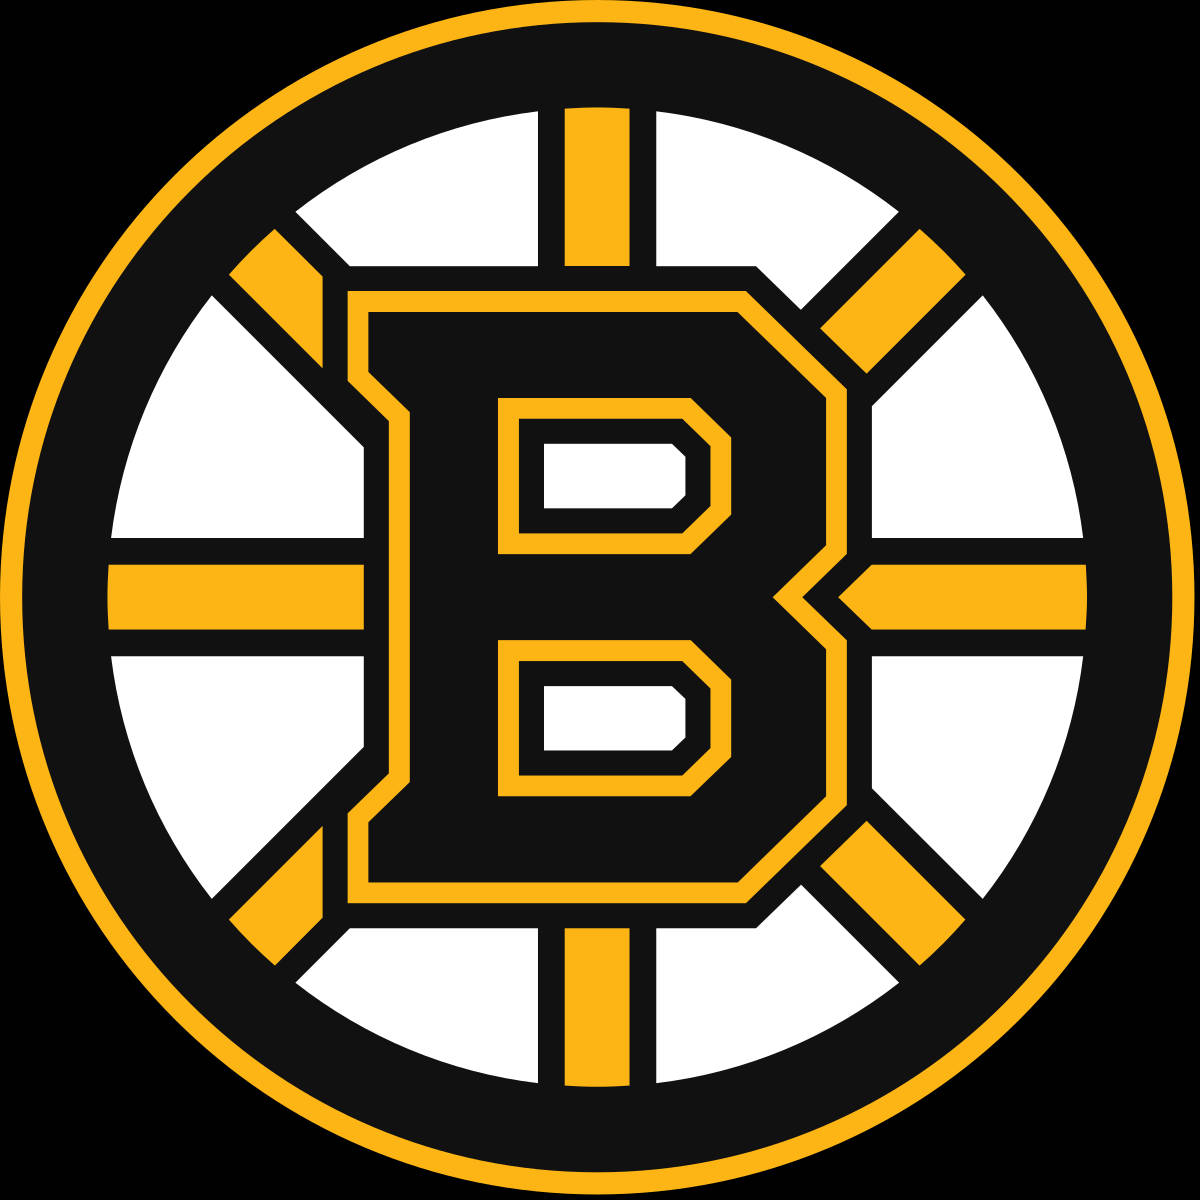 Det officielle logo for Boston Bruins Wallpaper